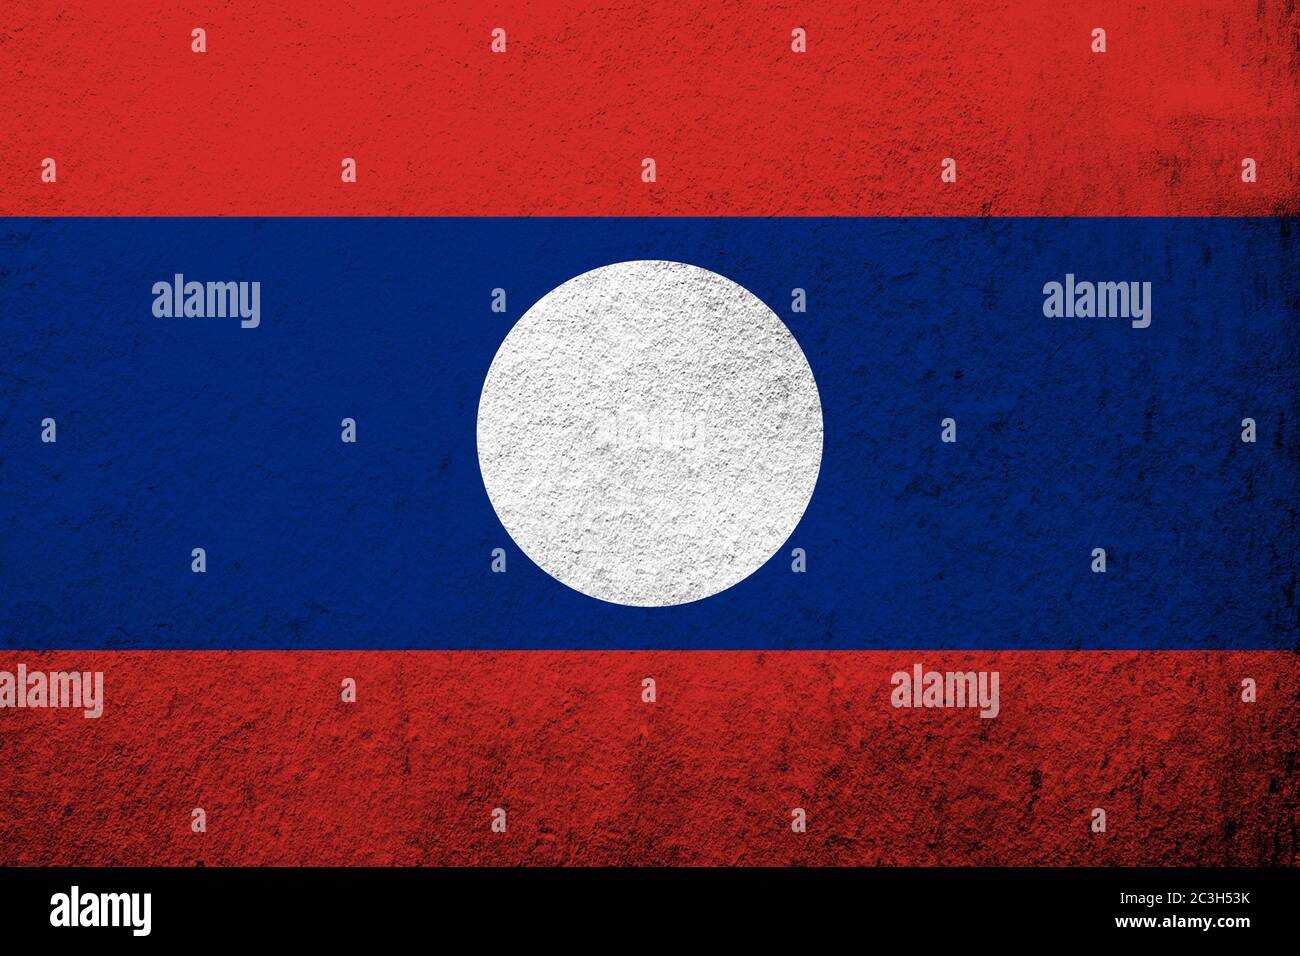 Bandera nacional de la República Democrática Popular Lao (Laos). Grunge fondo Foto de stock